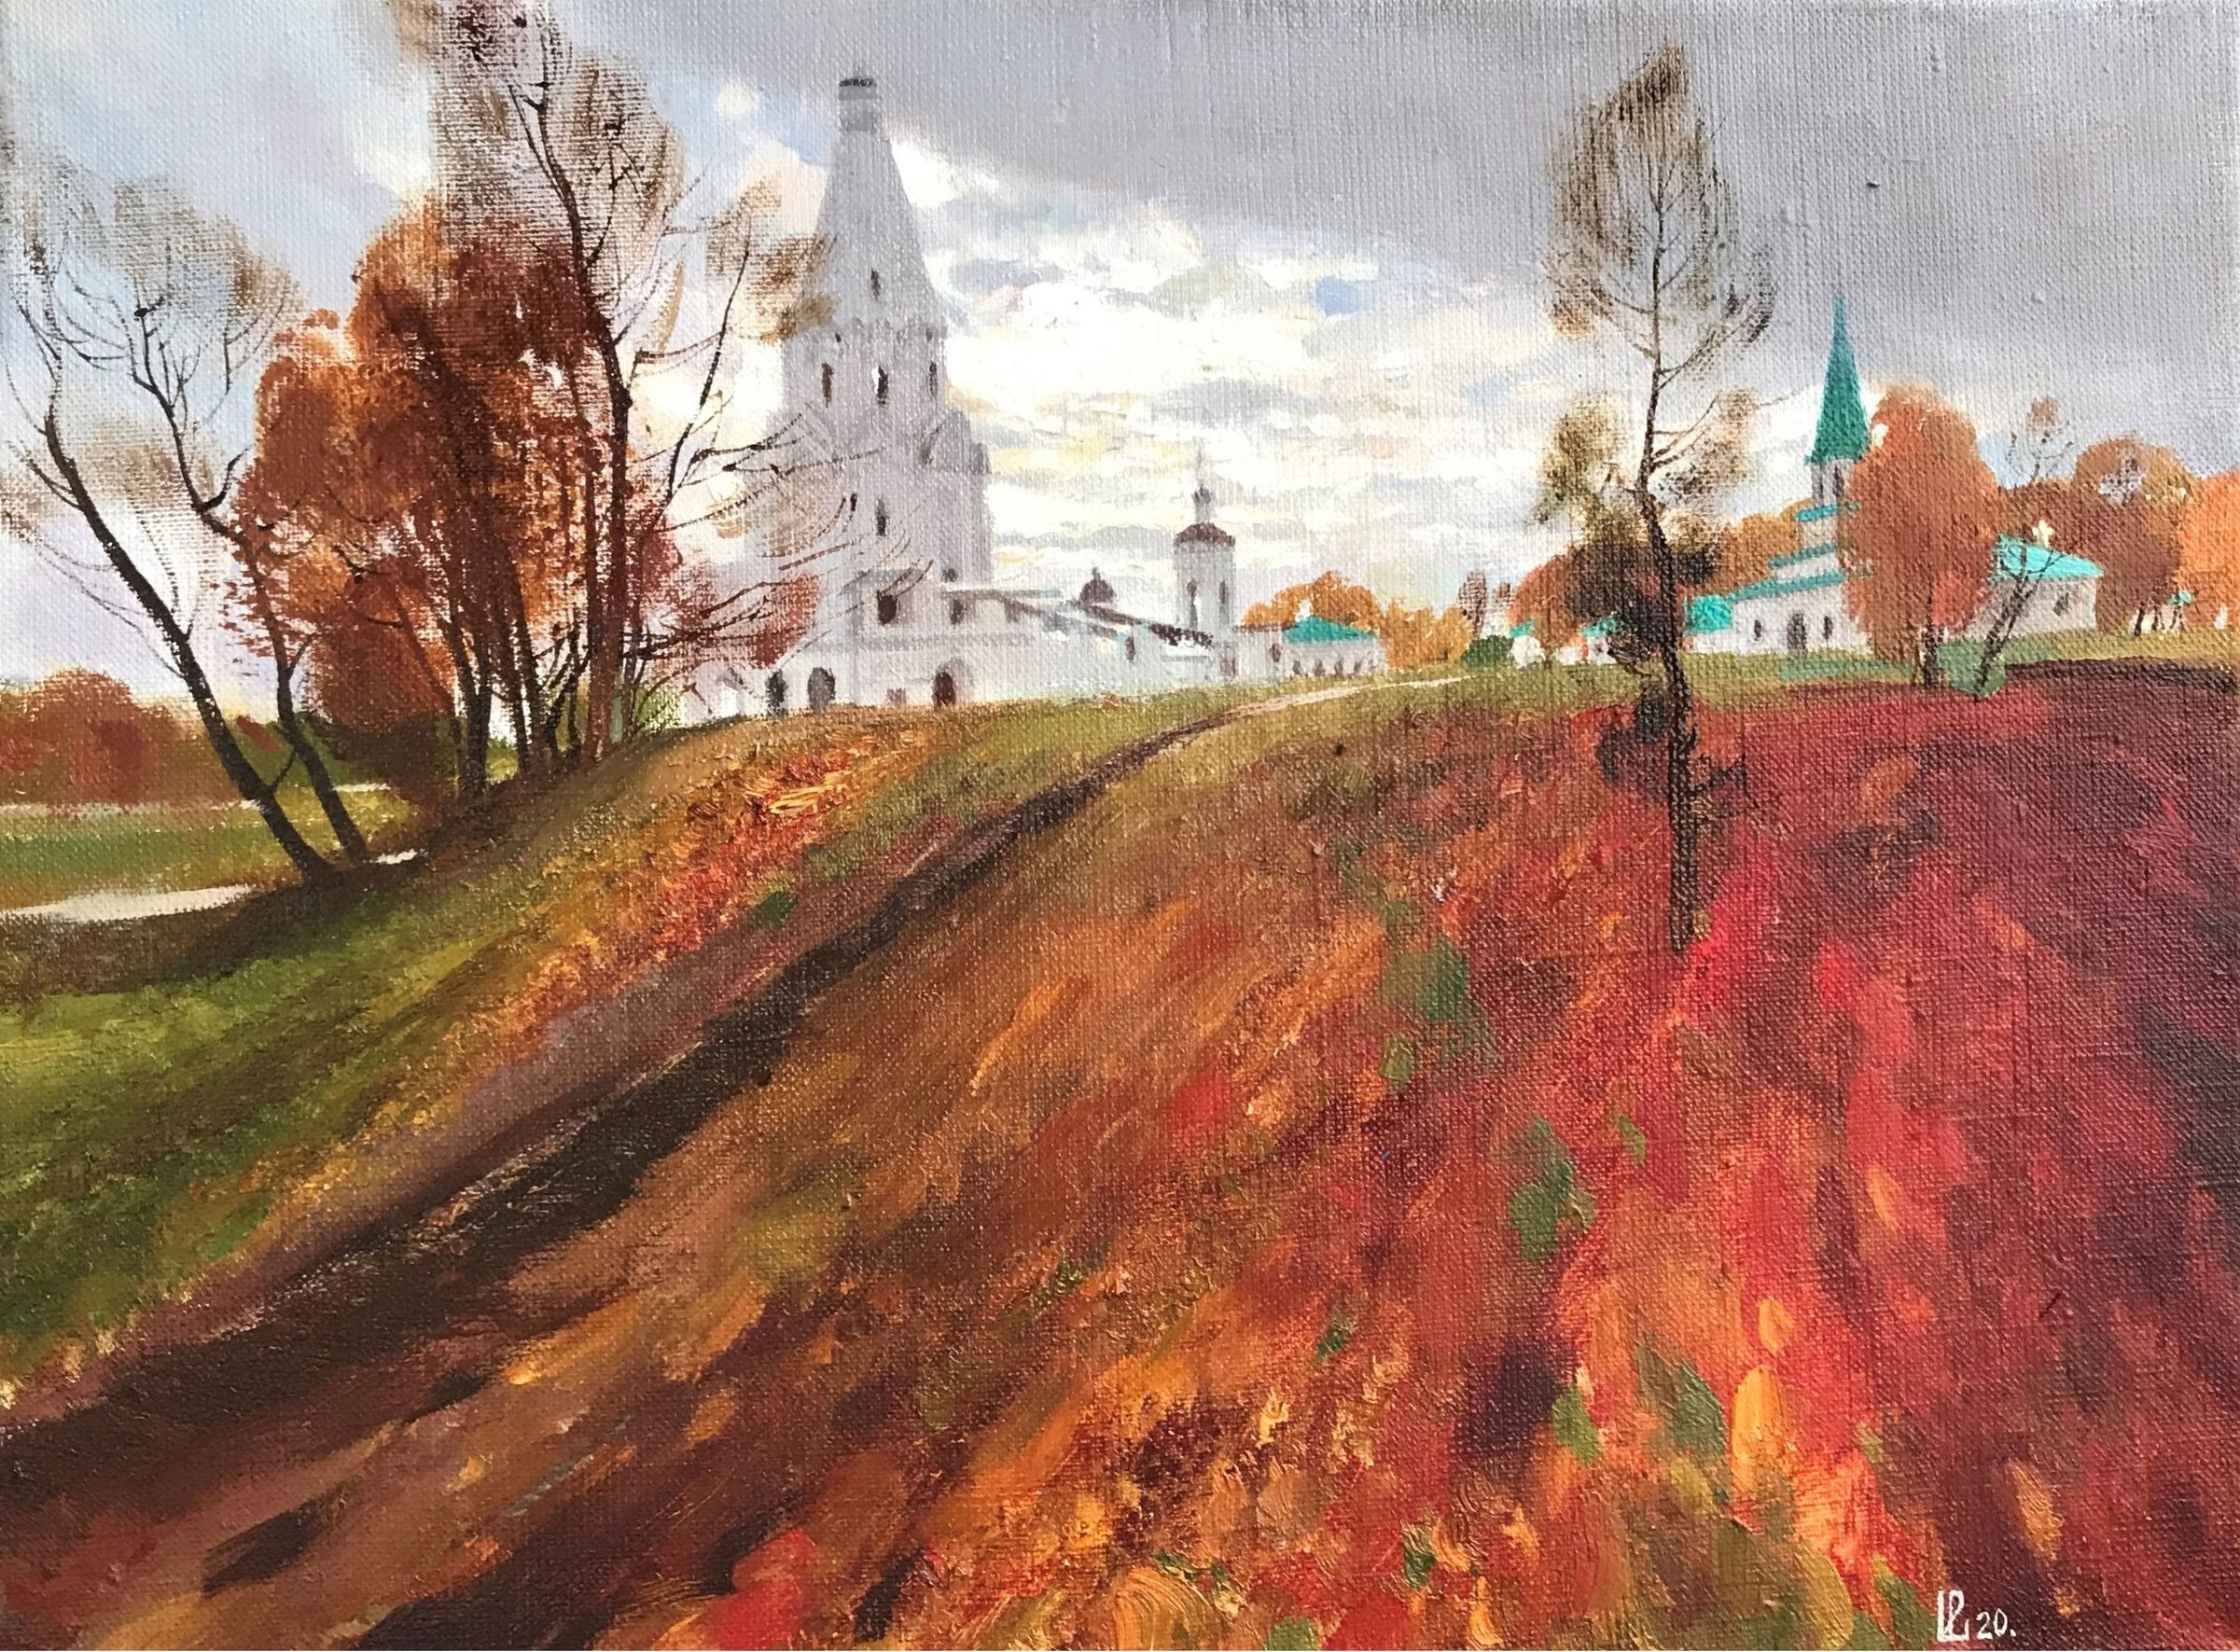 Kolomenskoye - 1, Evgeniya Davletshina, Buy the painting Oil